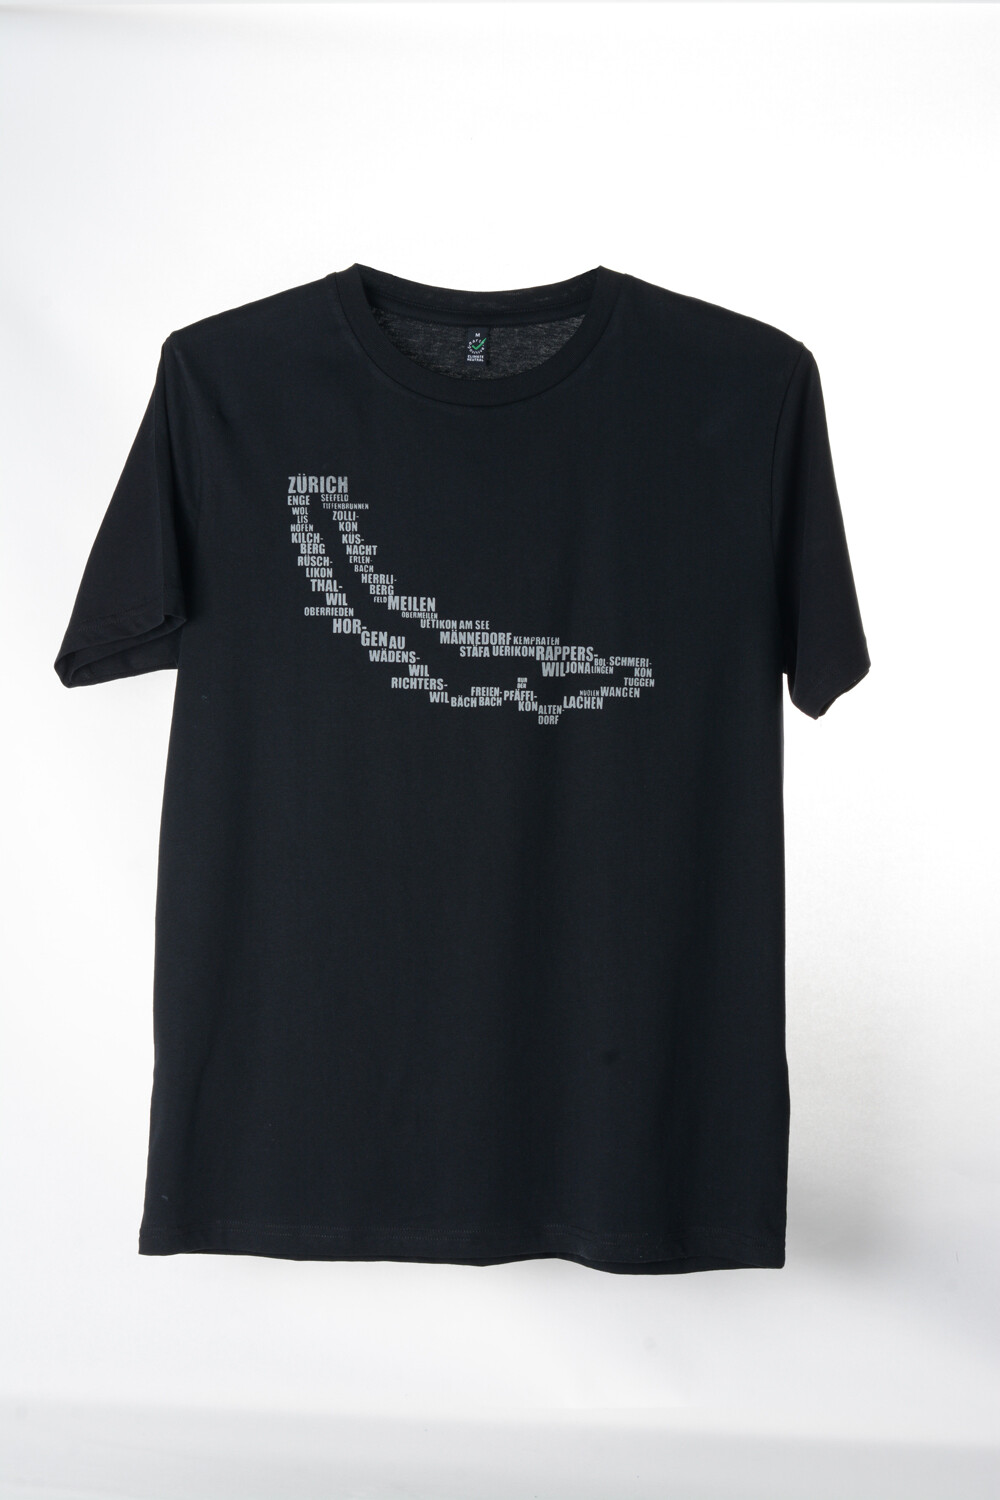 T-Shirt Zürisee (unisex) schwarz